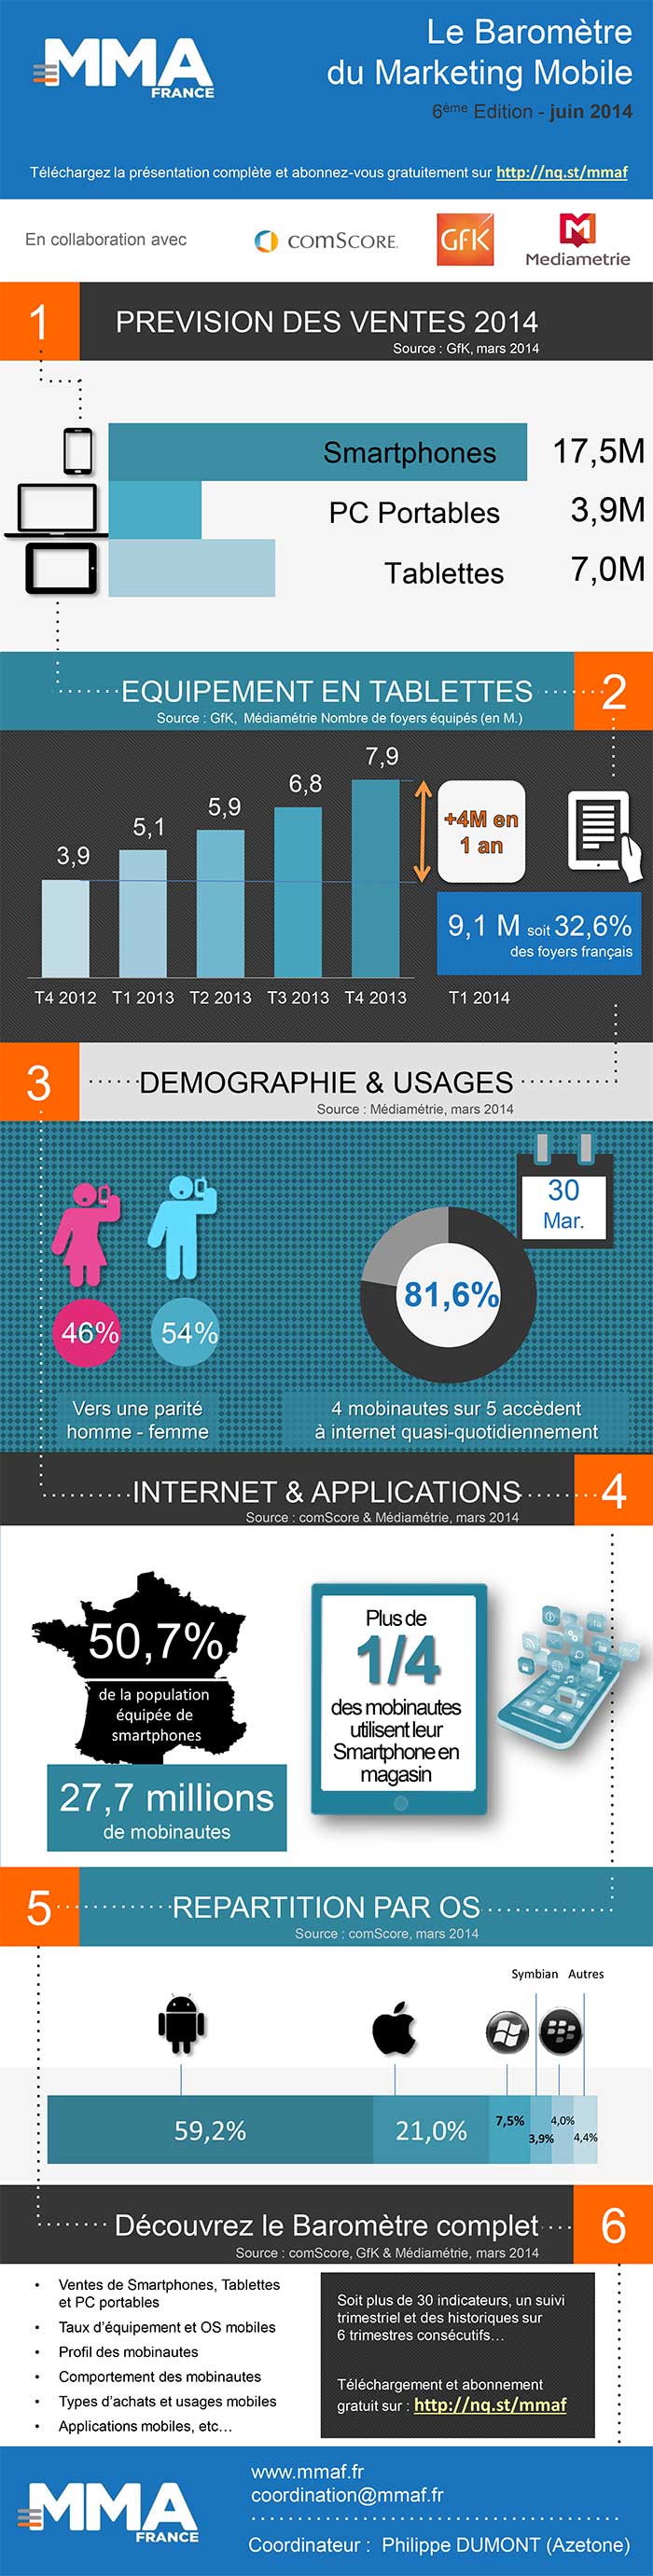 Infographie Baromètre du Marketing Mobile de la MMAF 1er trimestre 2014